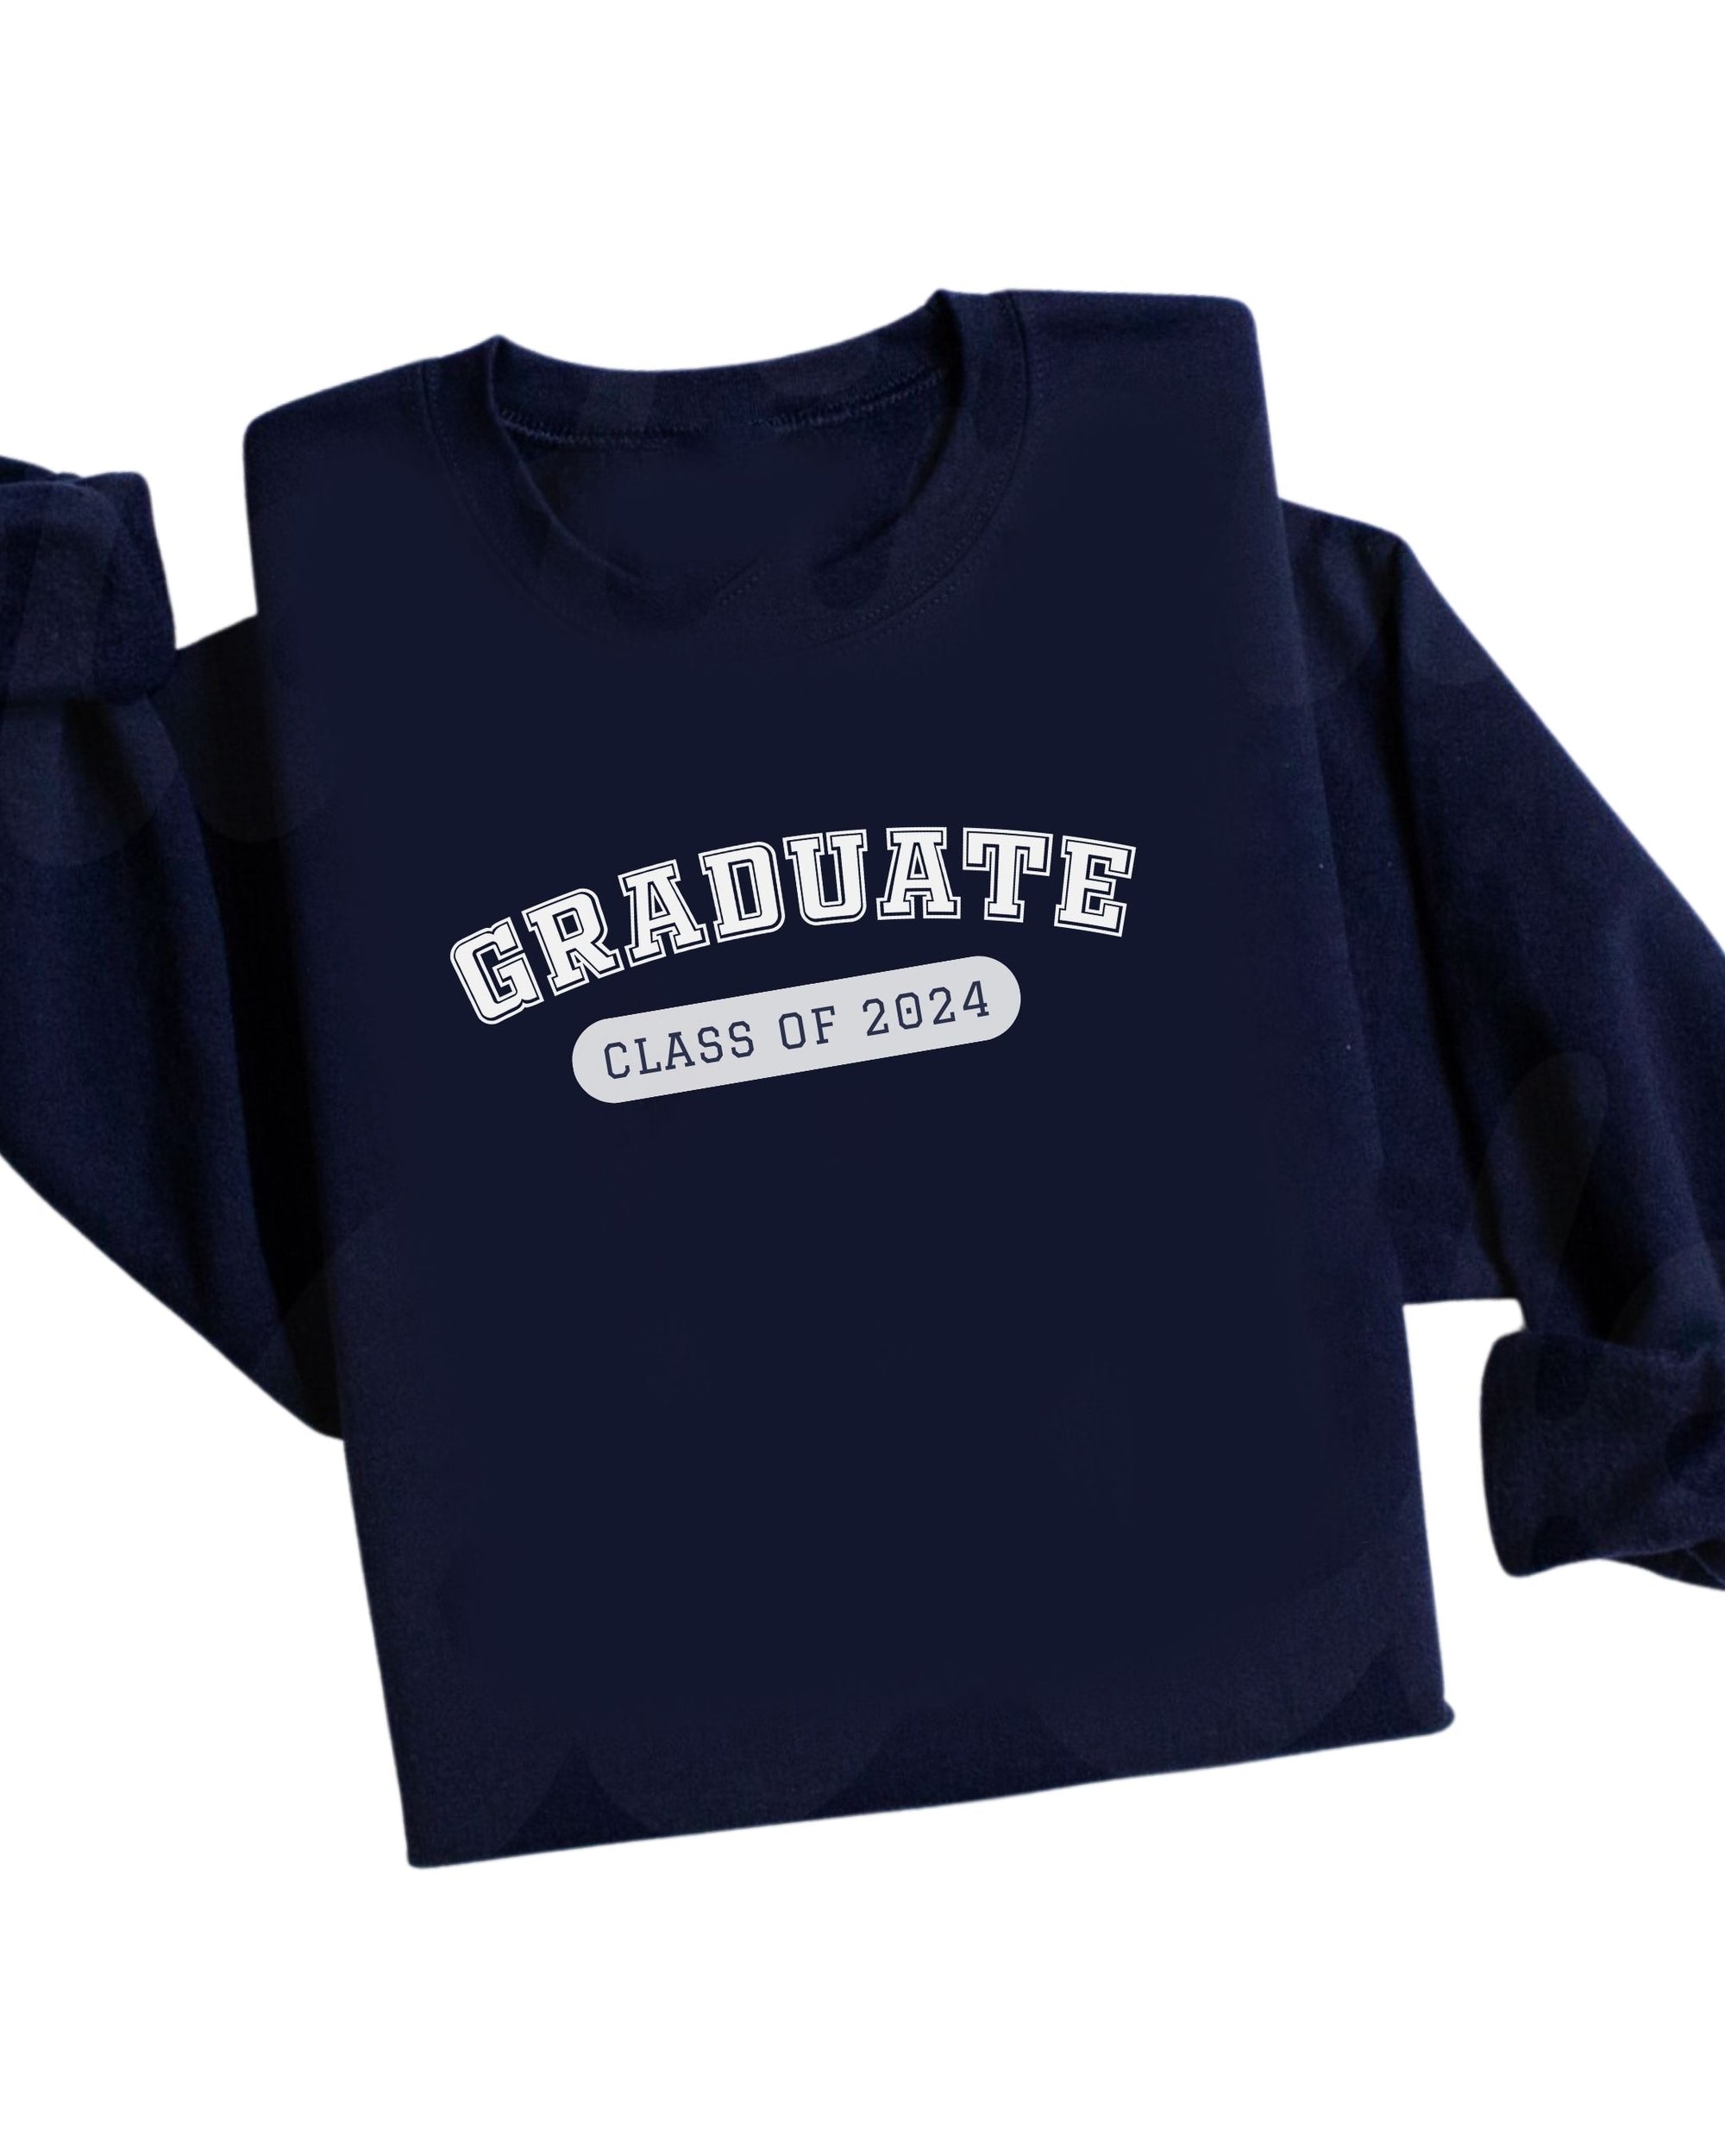 Navy Graduate Crewneck Sweater Class of 2024